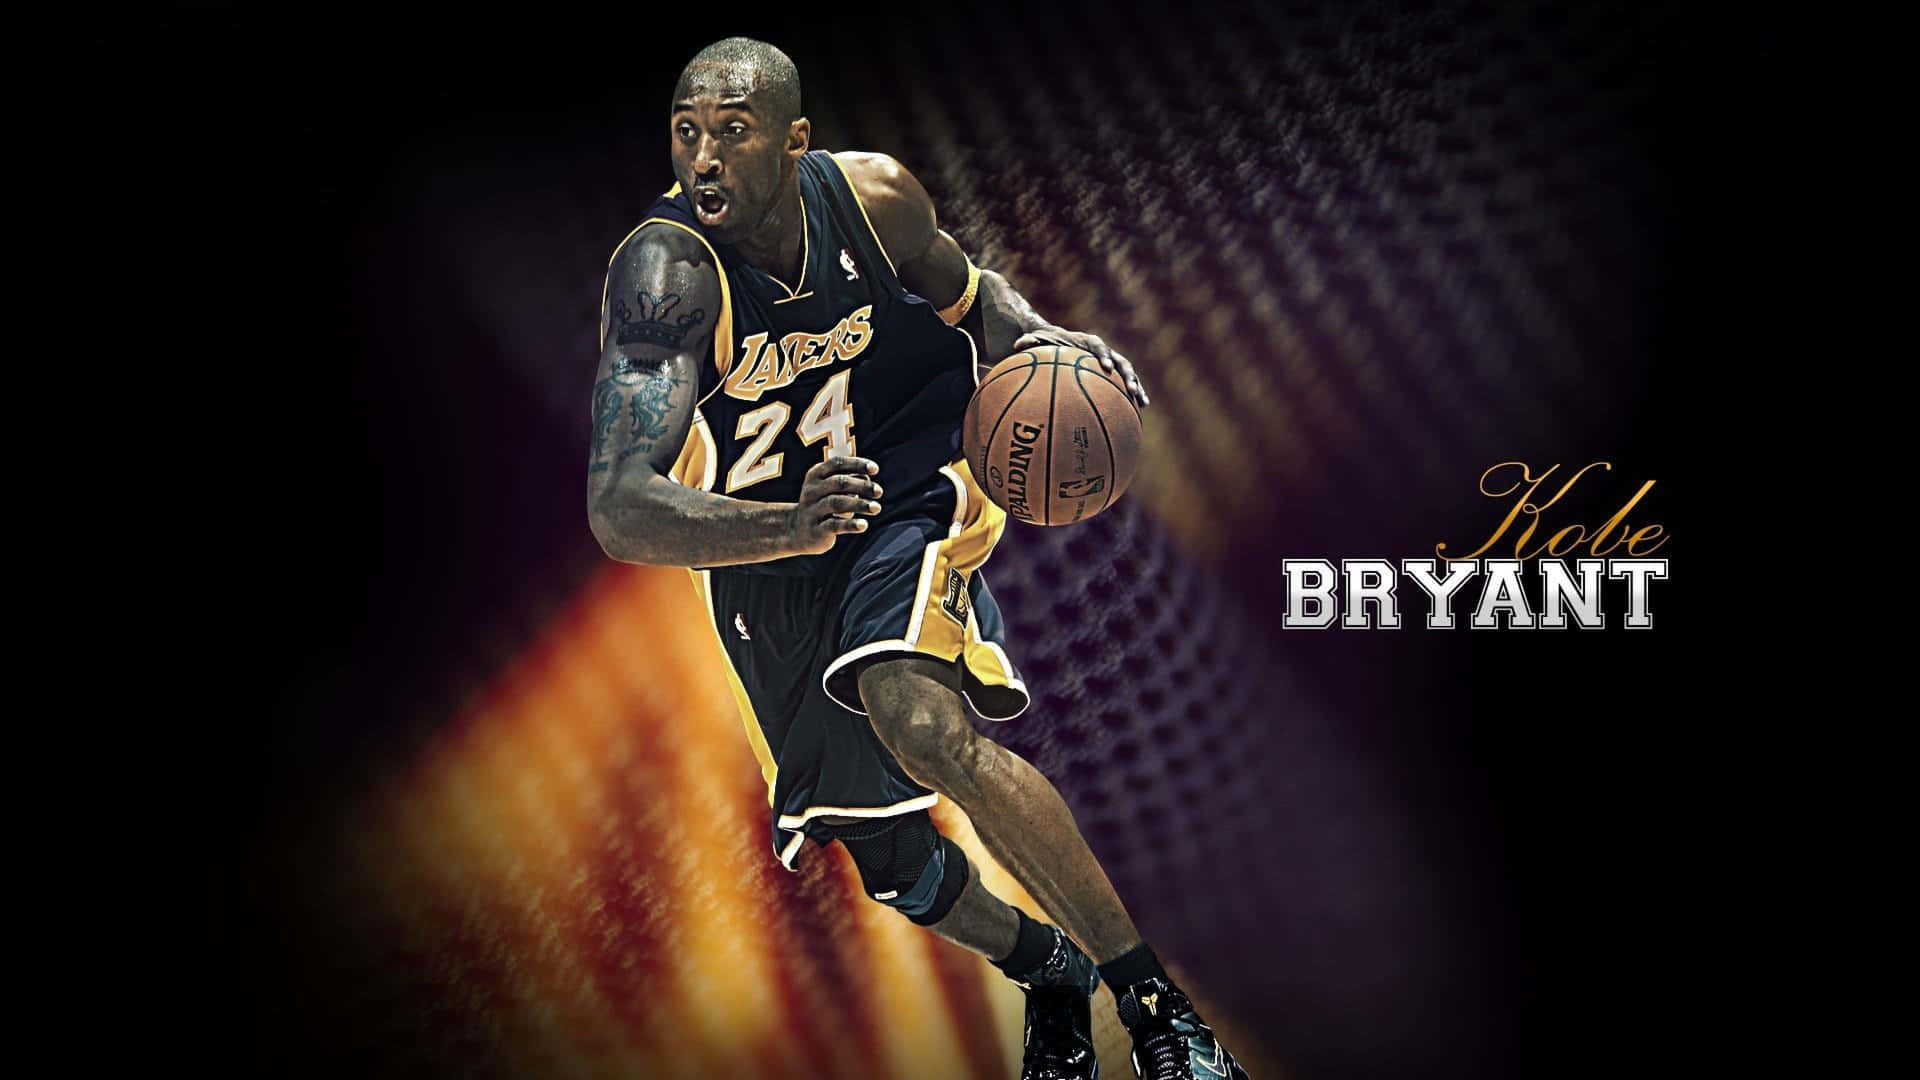 Bryantumarmt Einen Lakers-fan Während Eines Spiels Im Jahr 2015